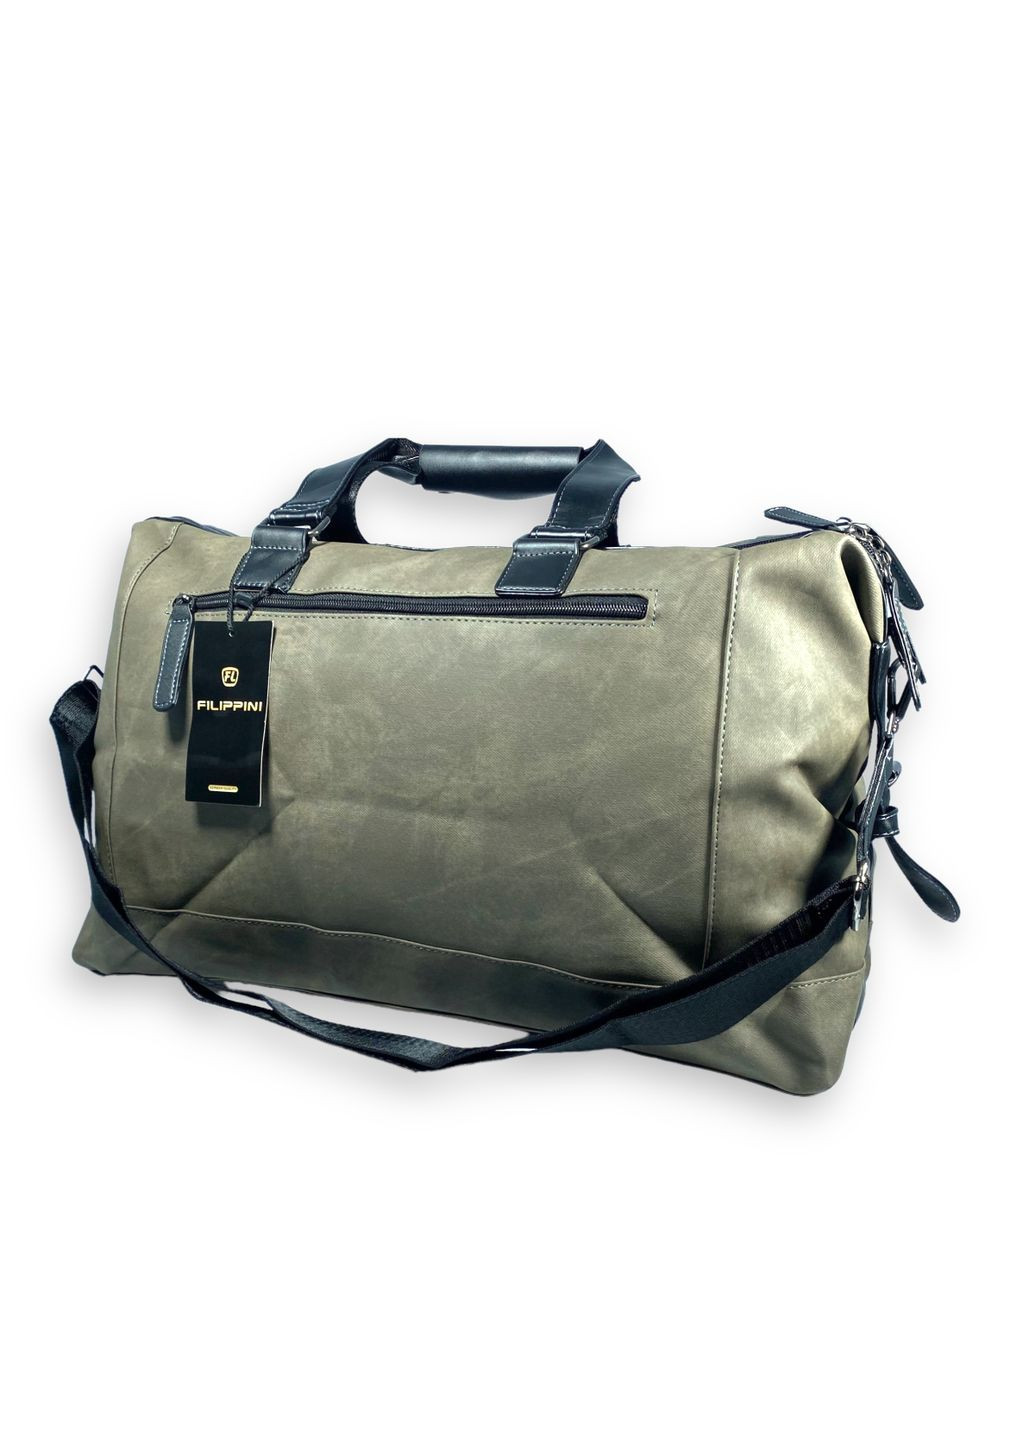 Дорожная сумка из экокожи 2 отдела внутренние карманы съемный ремень размер: 50*30*20 см зеленая Filippini (285814910)